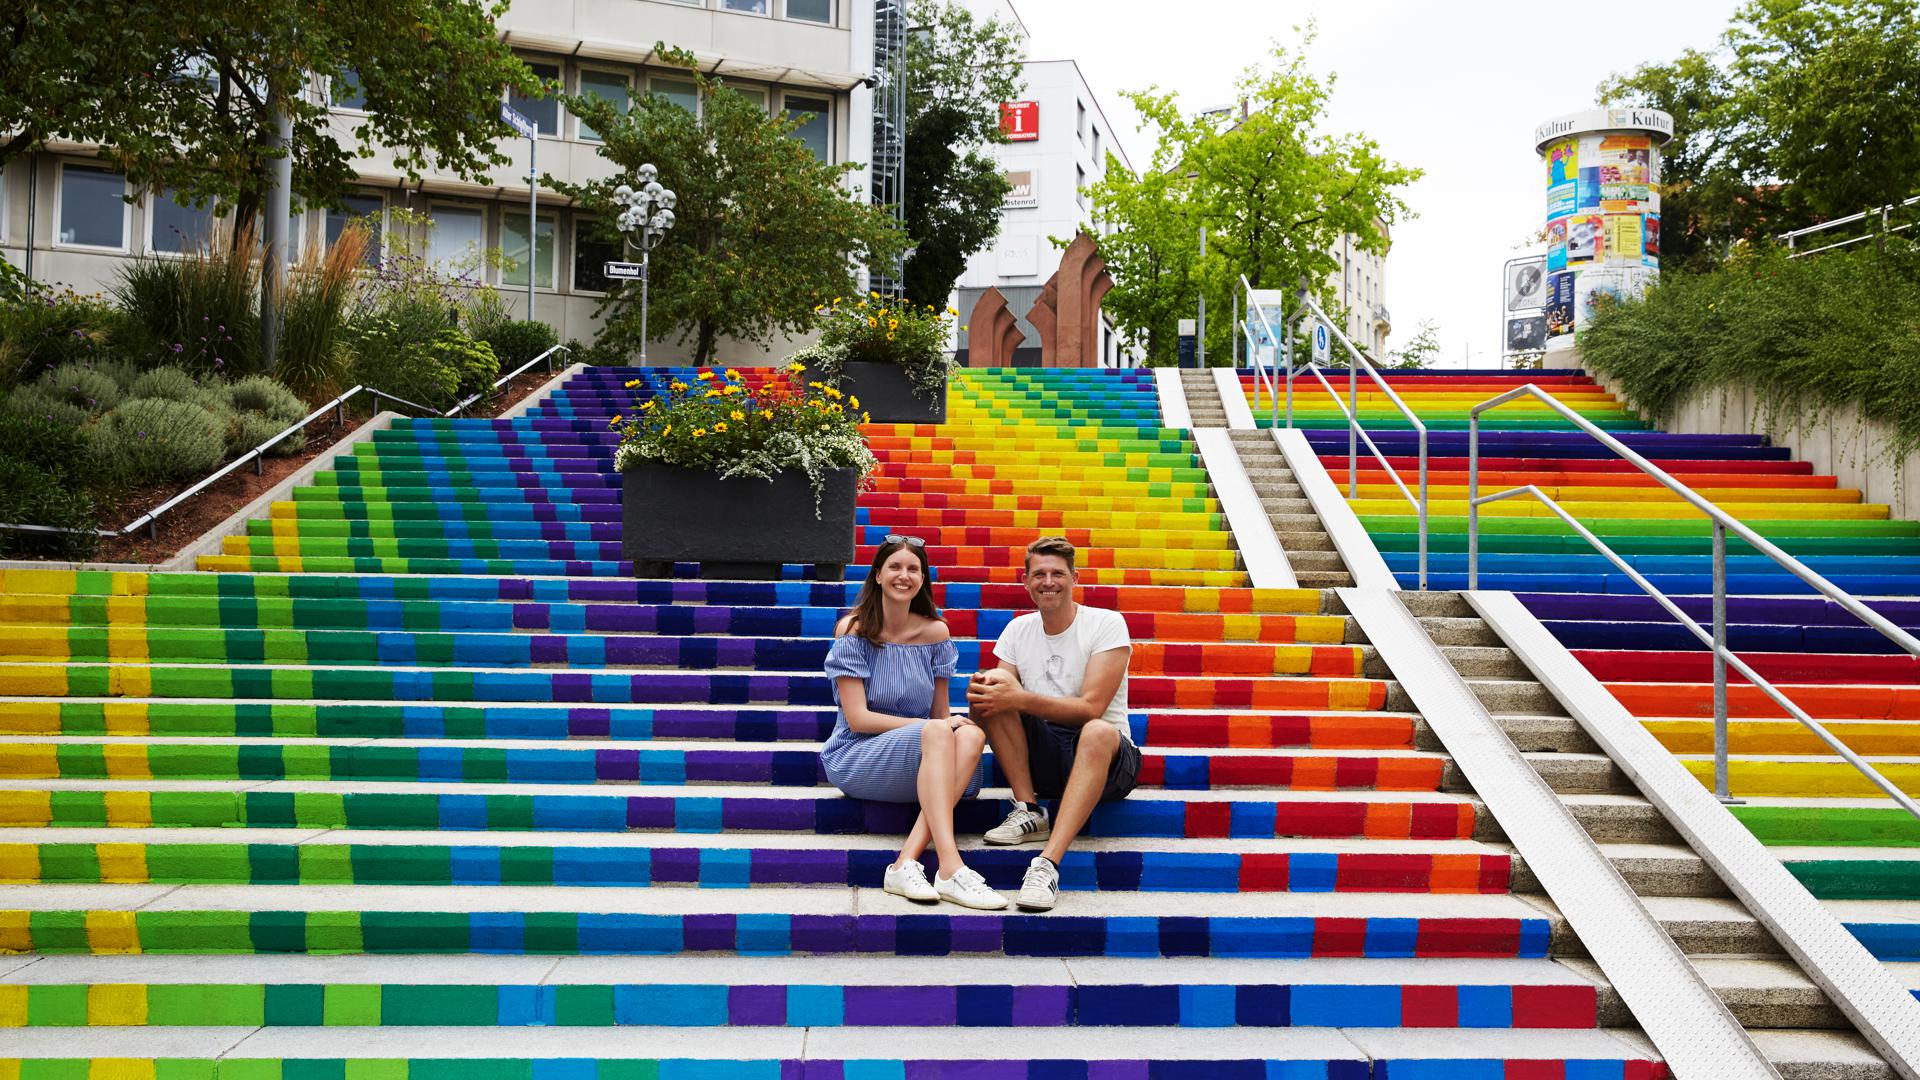 Linda Wendel und Bart Dewijze – das Künstlerduo The Artpole – auf der Treppe am Blumenhof, die durch ein Mitmachprojekt des Künstlerduos Farbe bekam.